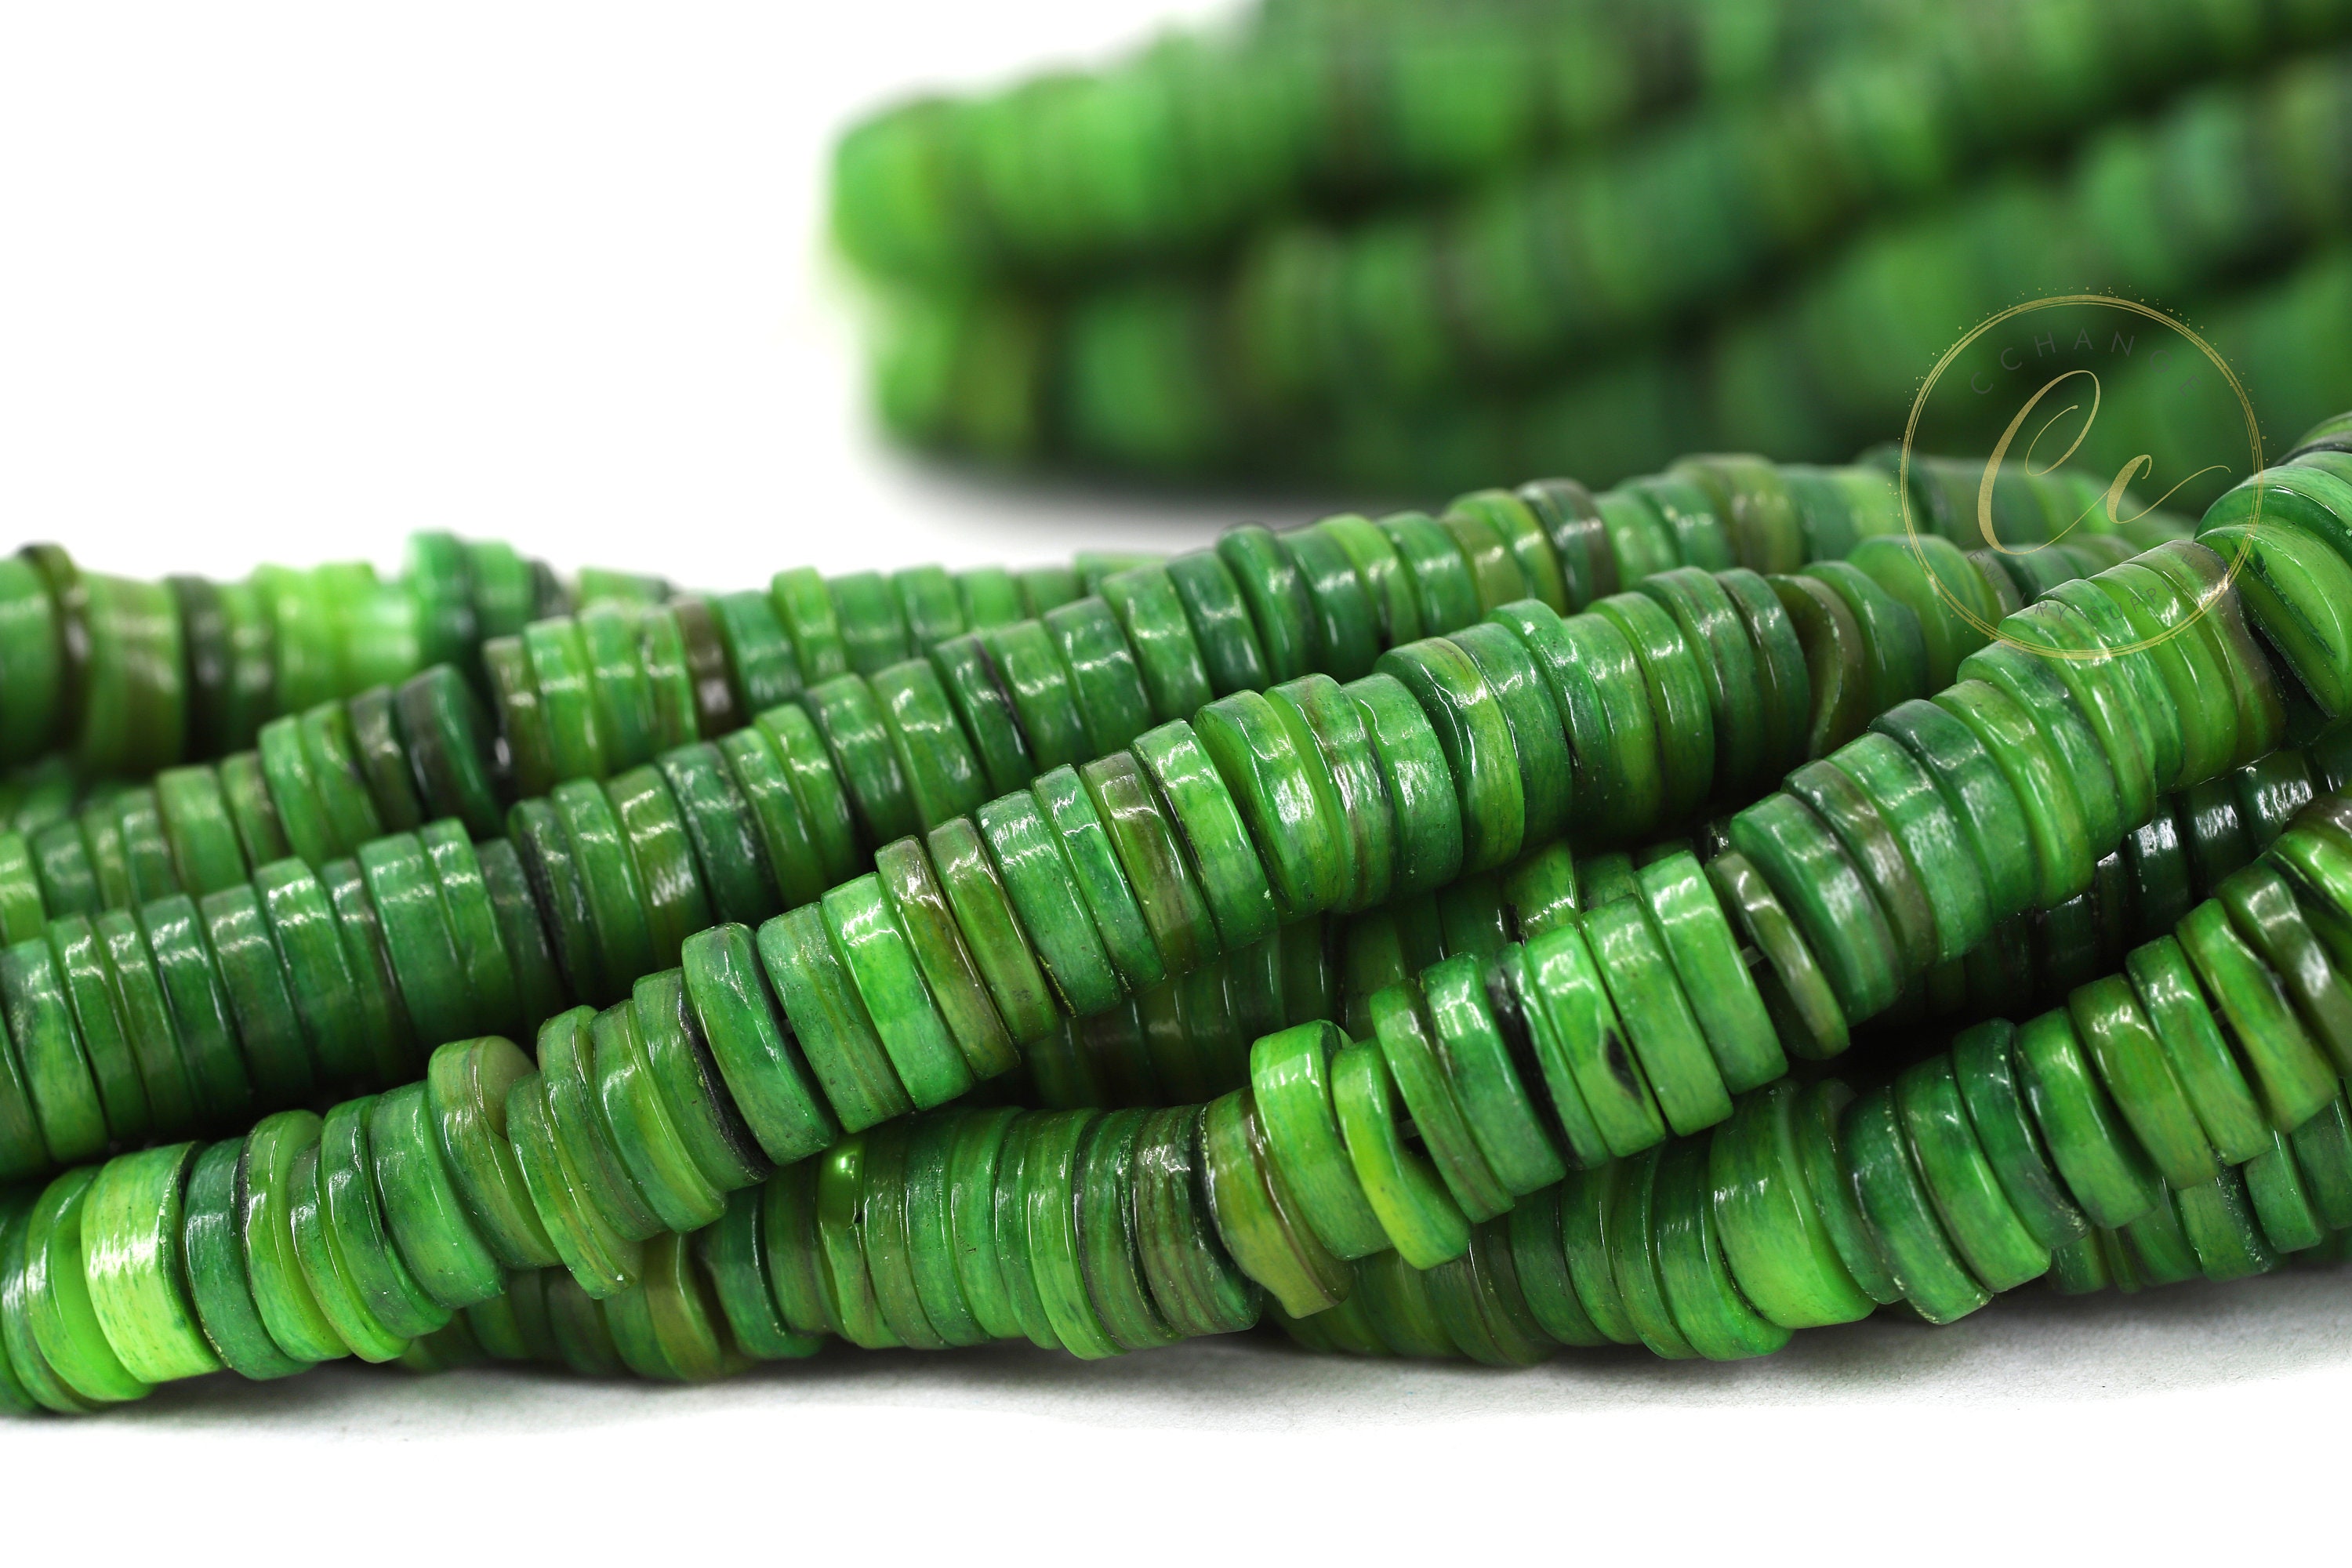 800PK Small Shades of Green Hair Beads